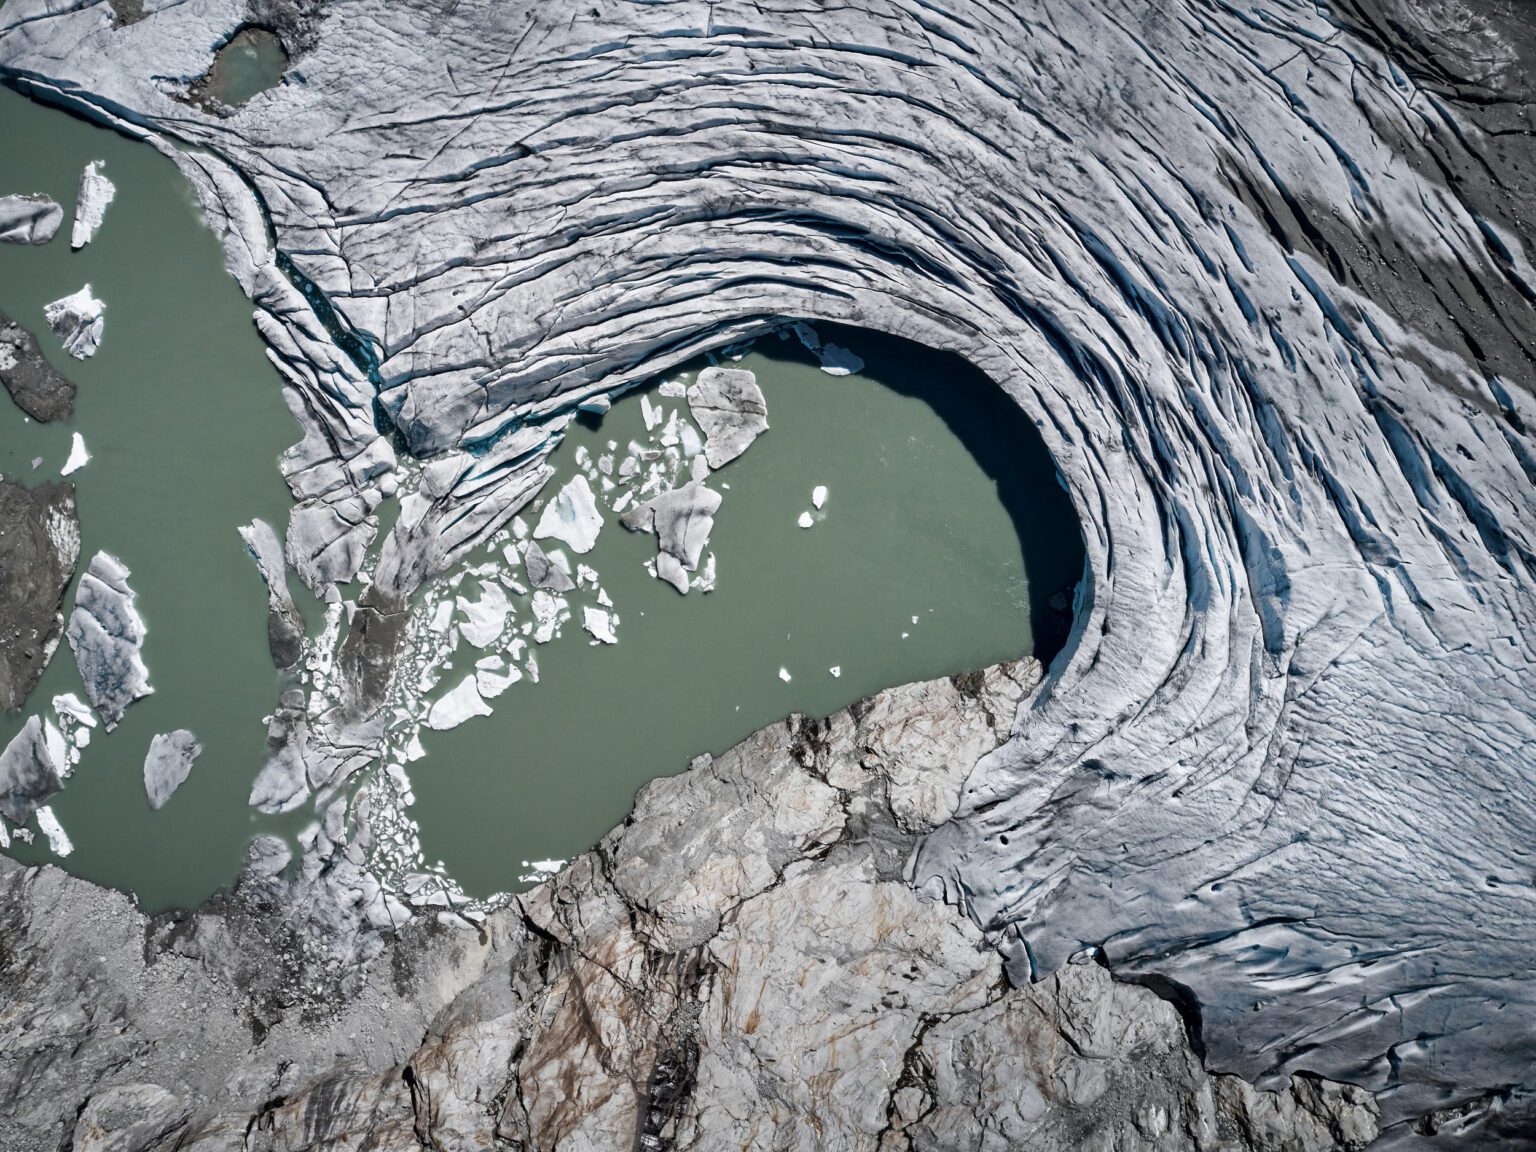 Glaciar Schlatenkees en 2022. El glaciar se ha reducido de forma drástica, con un lago glacial claramente formado. Ahora se cree que la lengua del glaciar está muerta o rota. © Mitja Kobal / Greenpeace